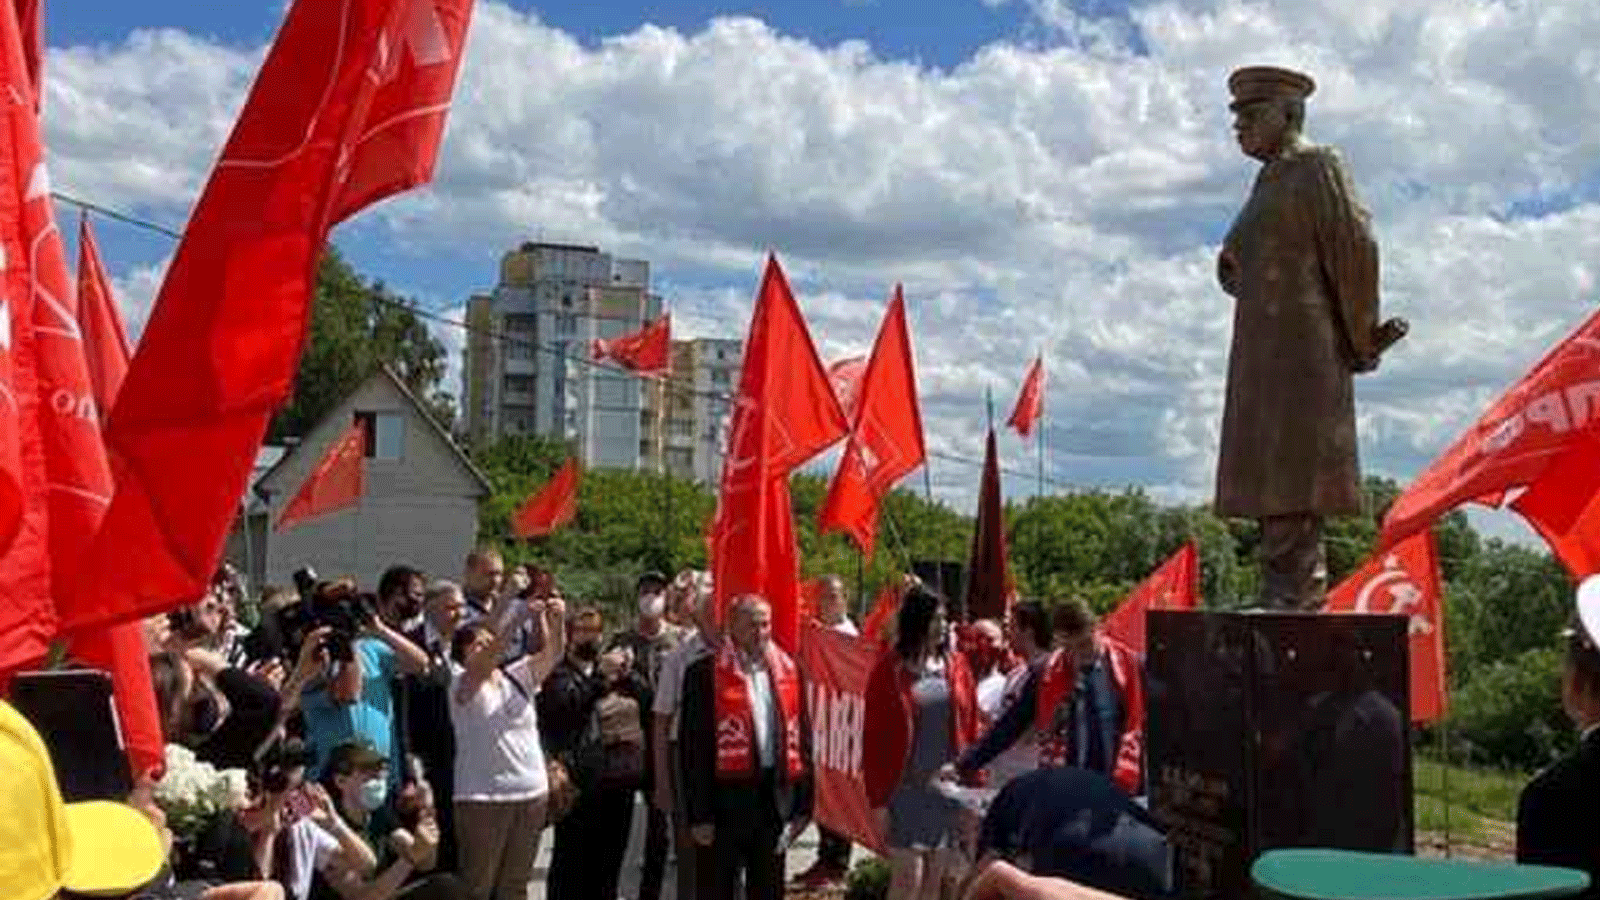 روسيا تكشف النقاب عن تمثال نصفي للقائد جوزيف ستالين في مدينة فولغوغراد بجنوب روسيا، الأربعاء، عشية إحياء ذكرى انتصار السوفيات في معركة ستالينغراد 